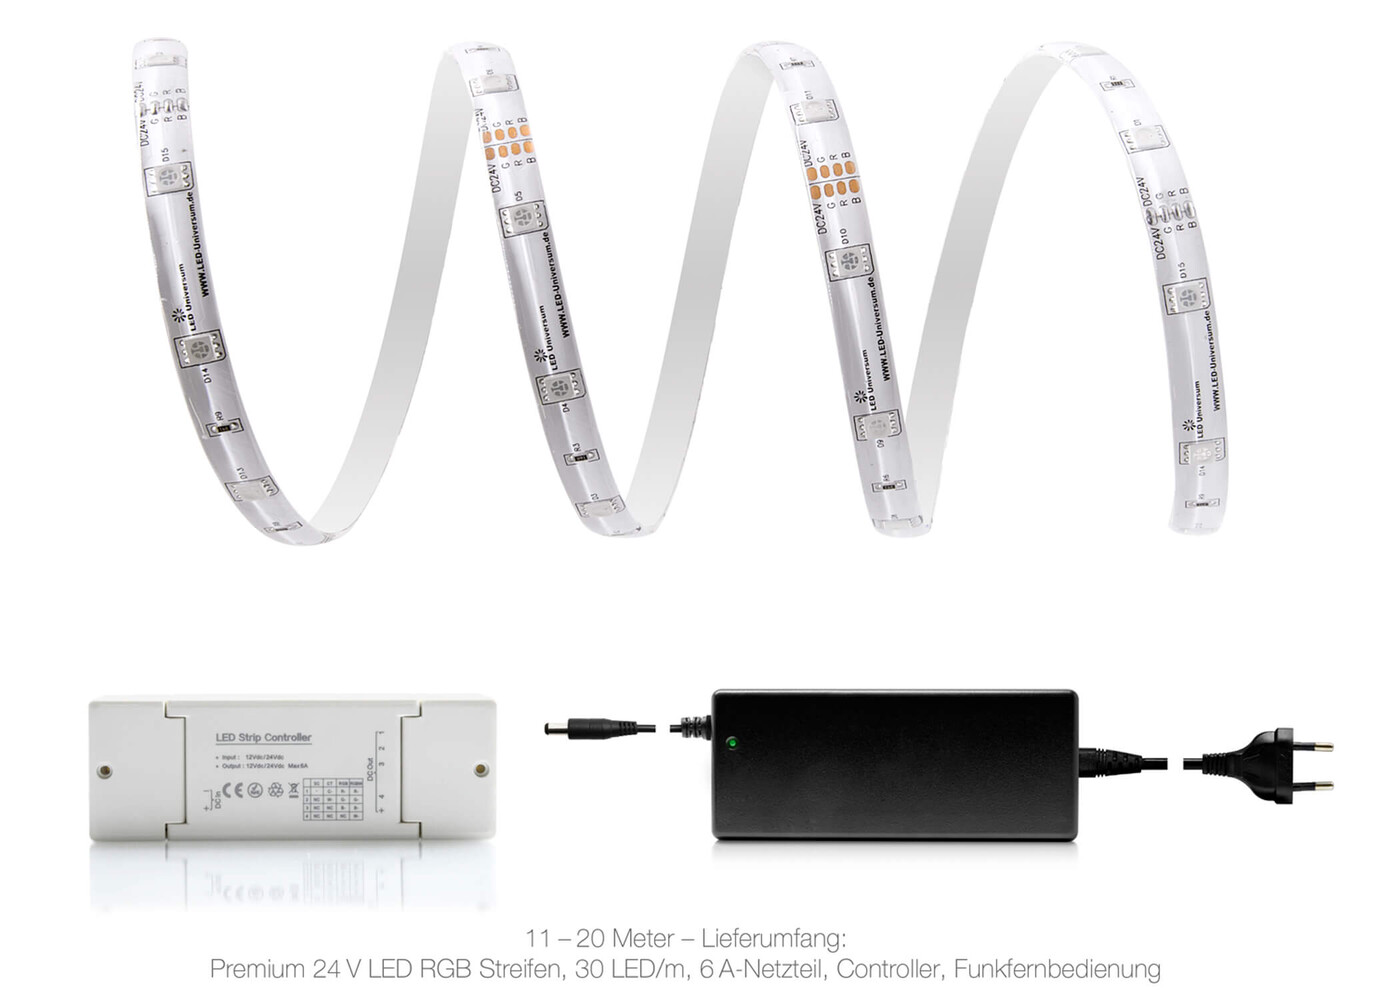 Hochwertiger LED Streifen von LED Universum mit Smart Home Funktion